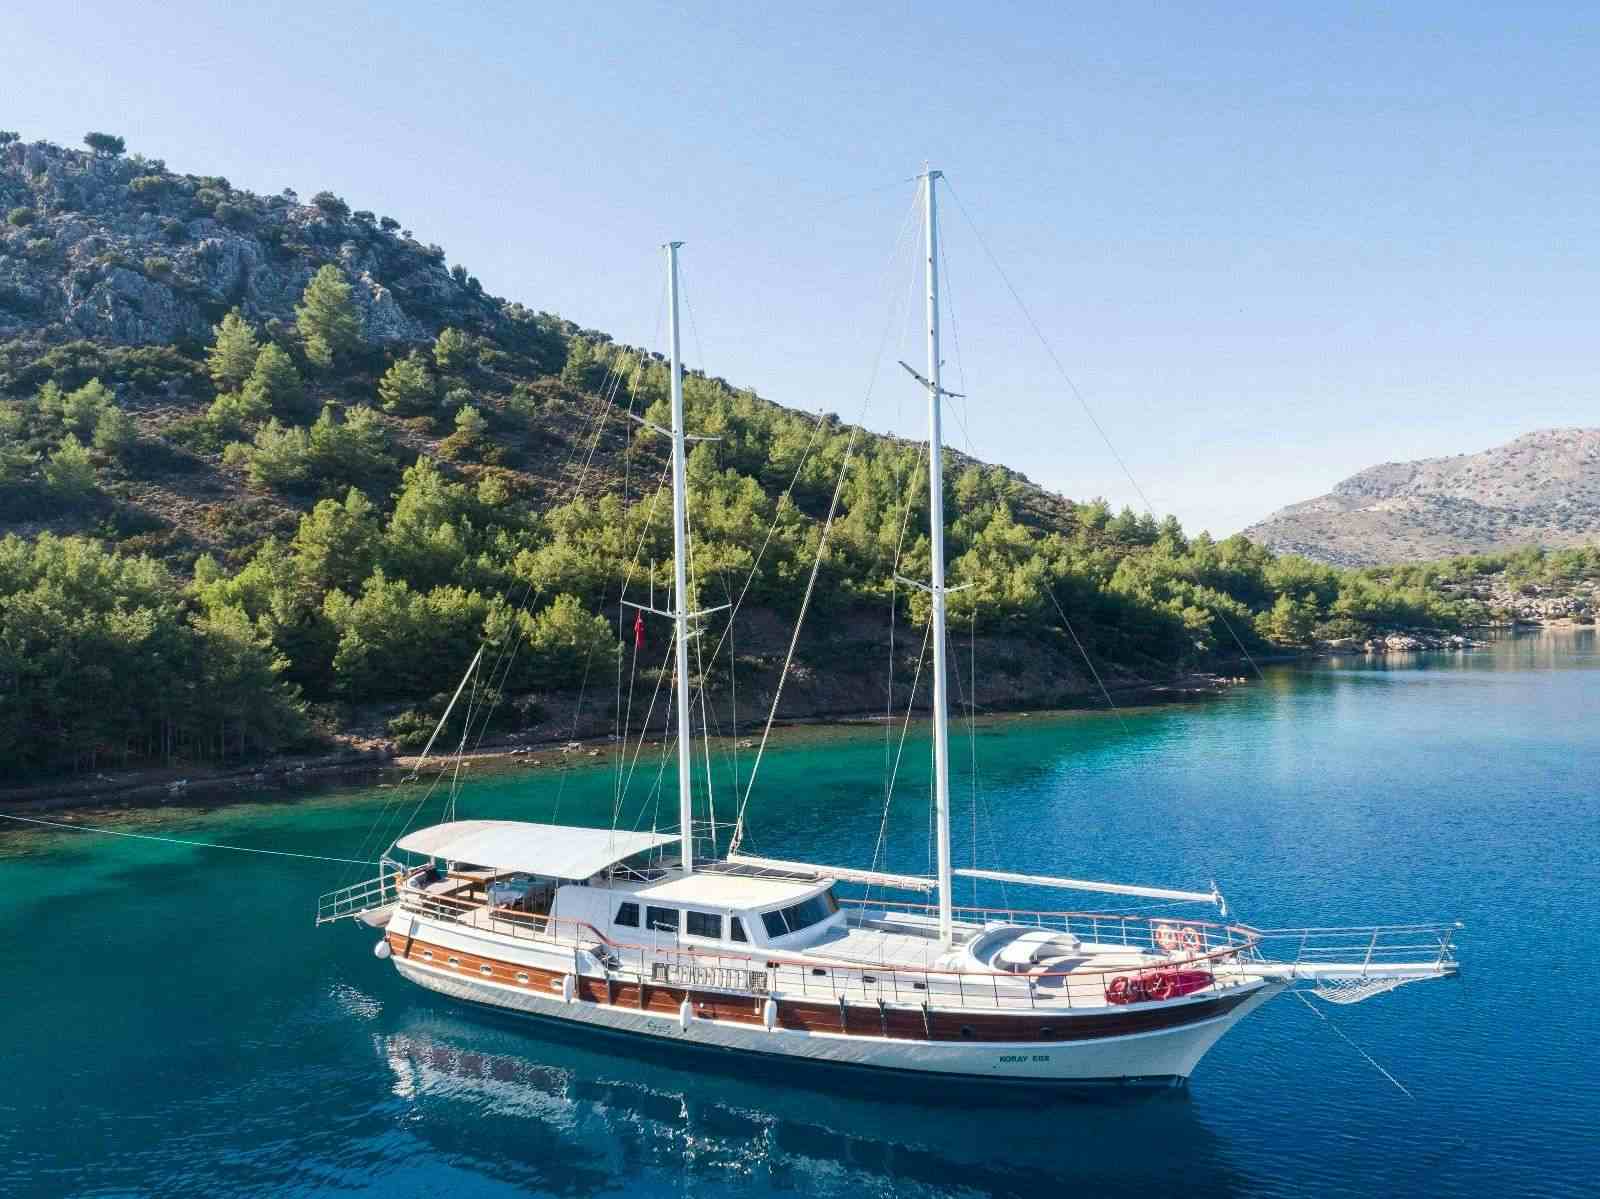 koray ege - Yacht Charter Birmingham & Boat hire in Greece & Turkey 1